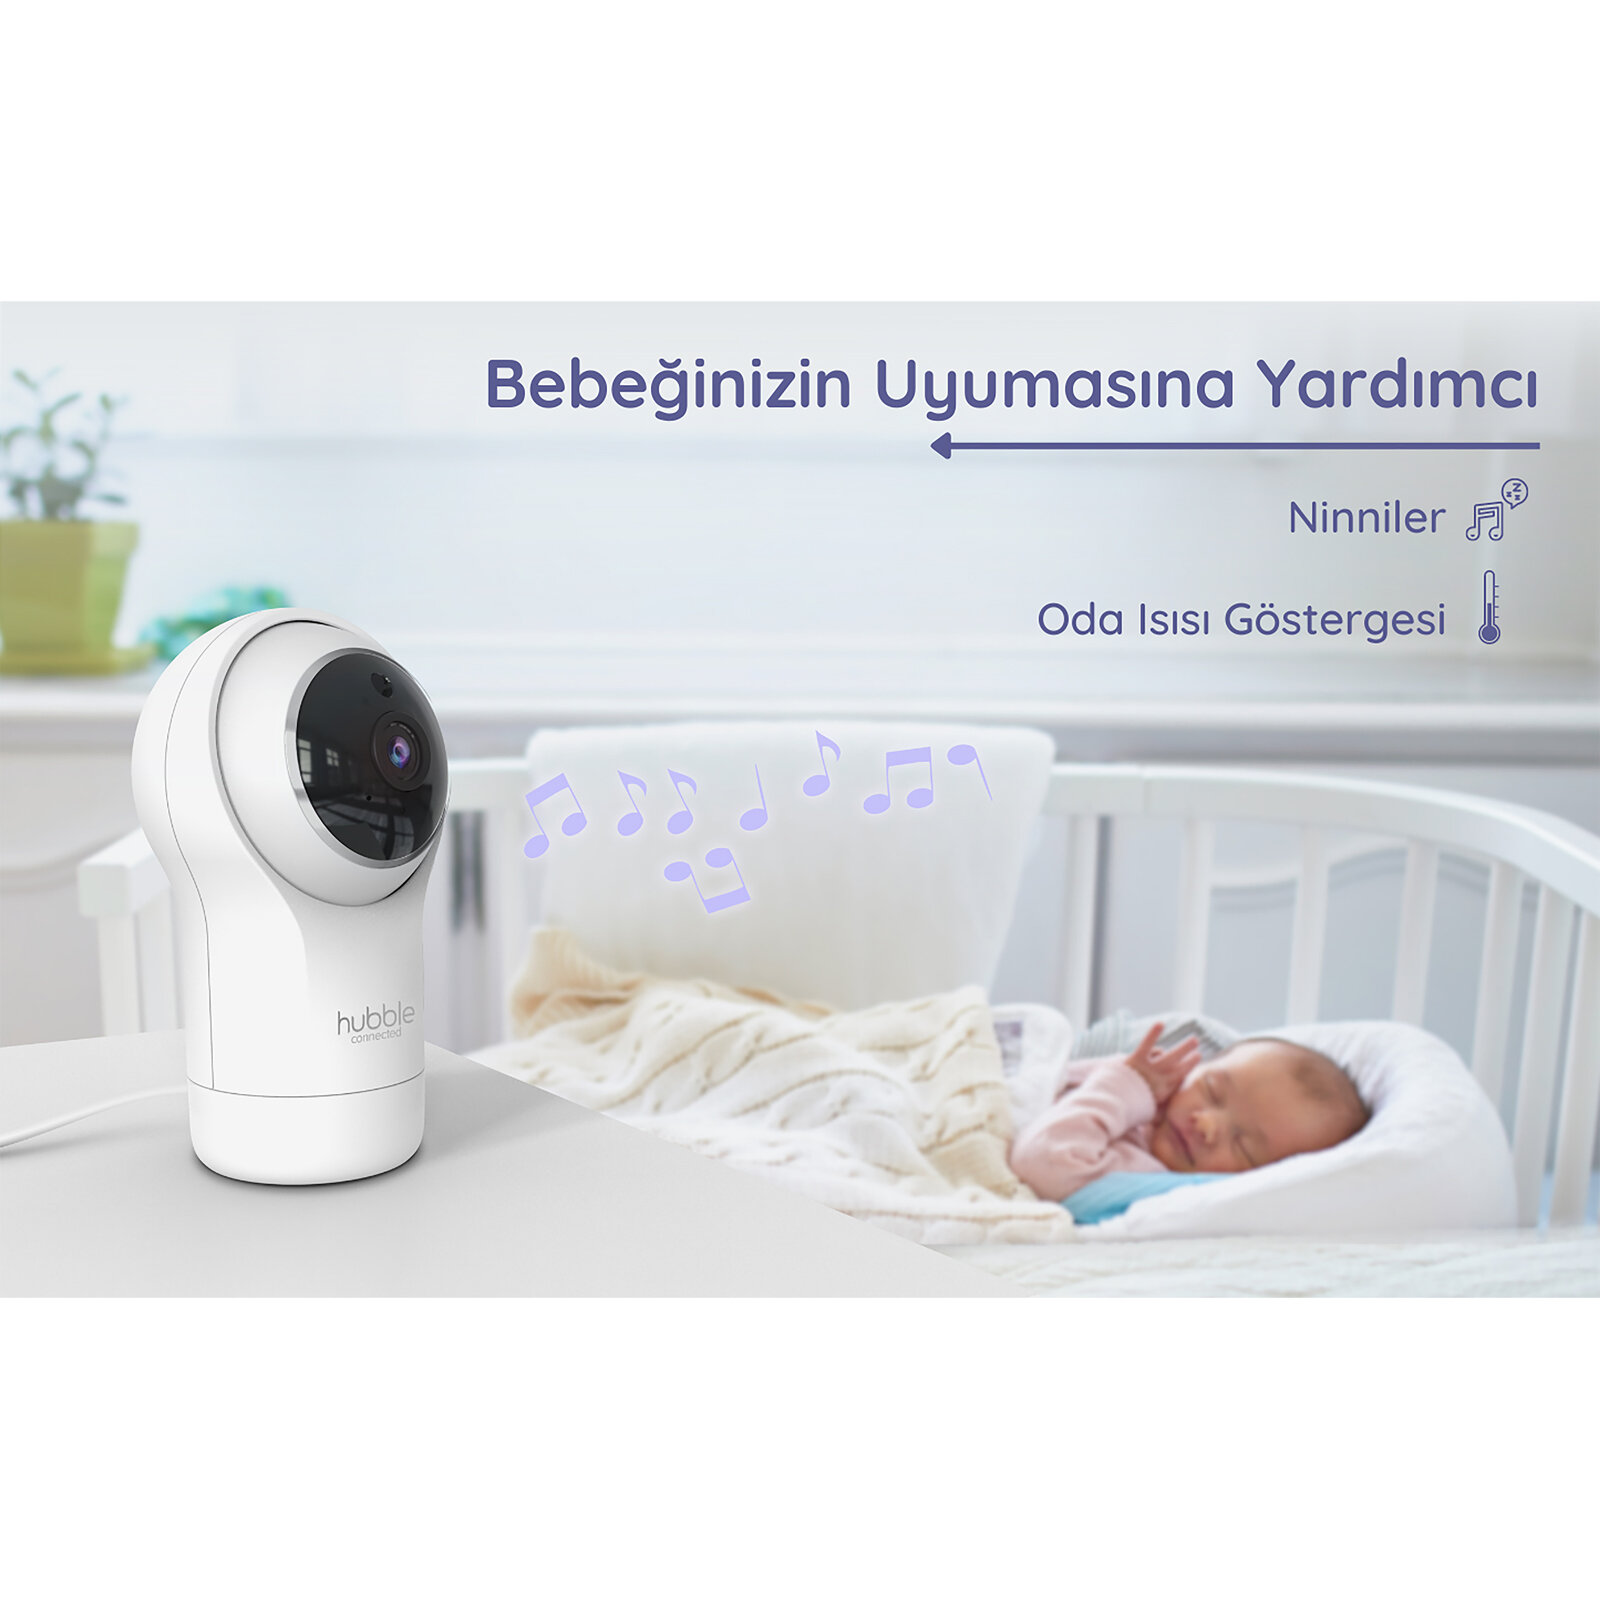 Nursery View Pro 5’’ Dijital Ekranlı Bebek Kamerası